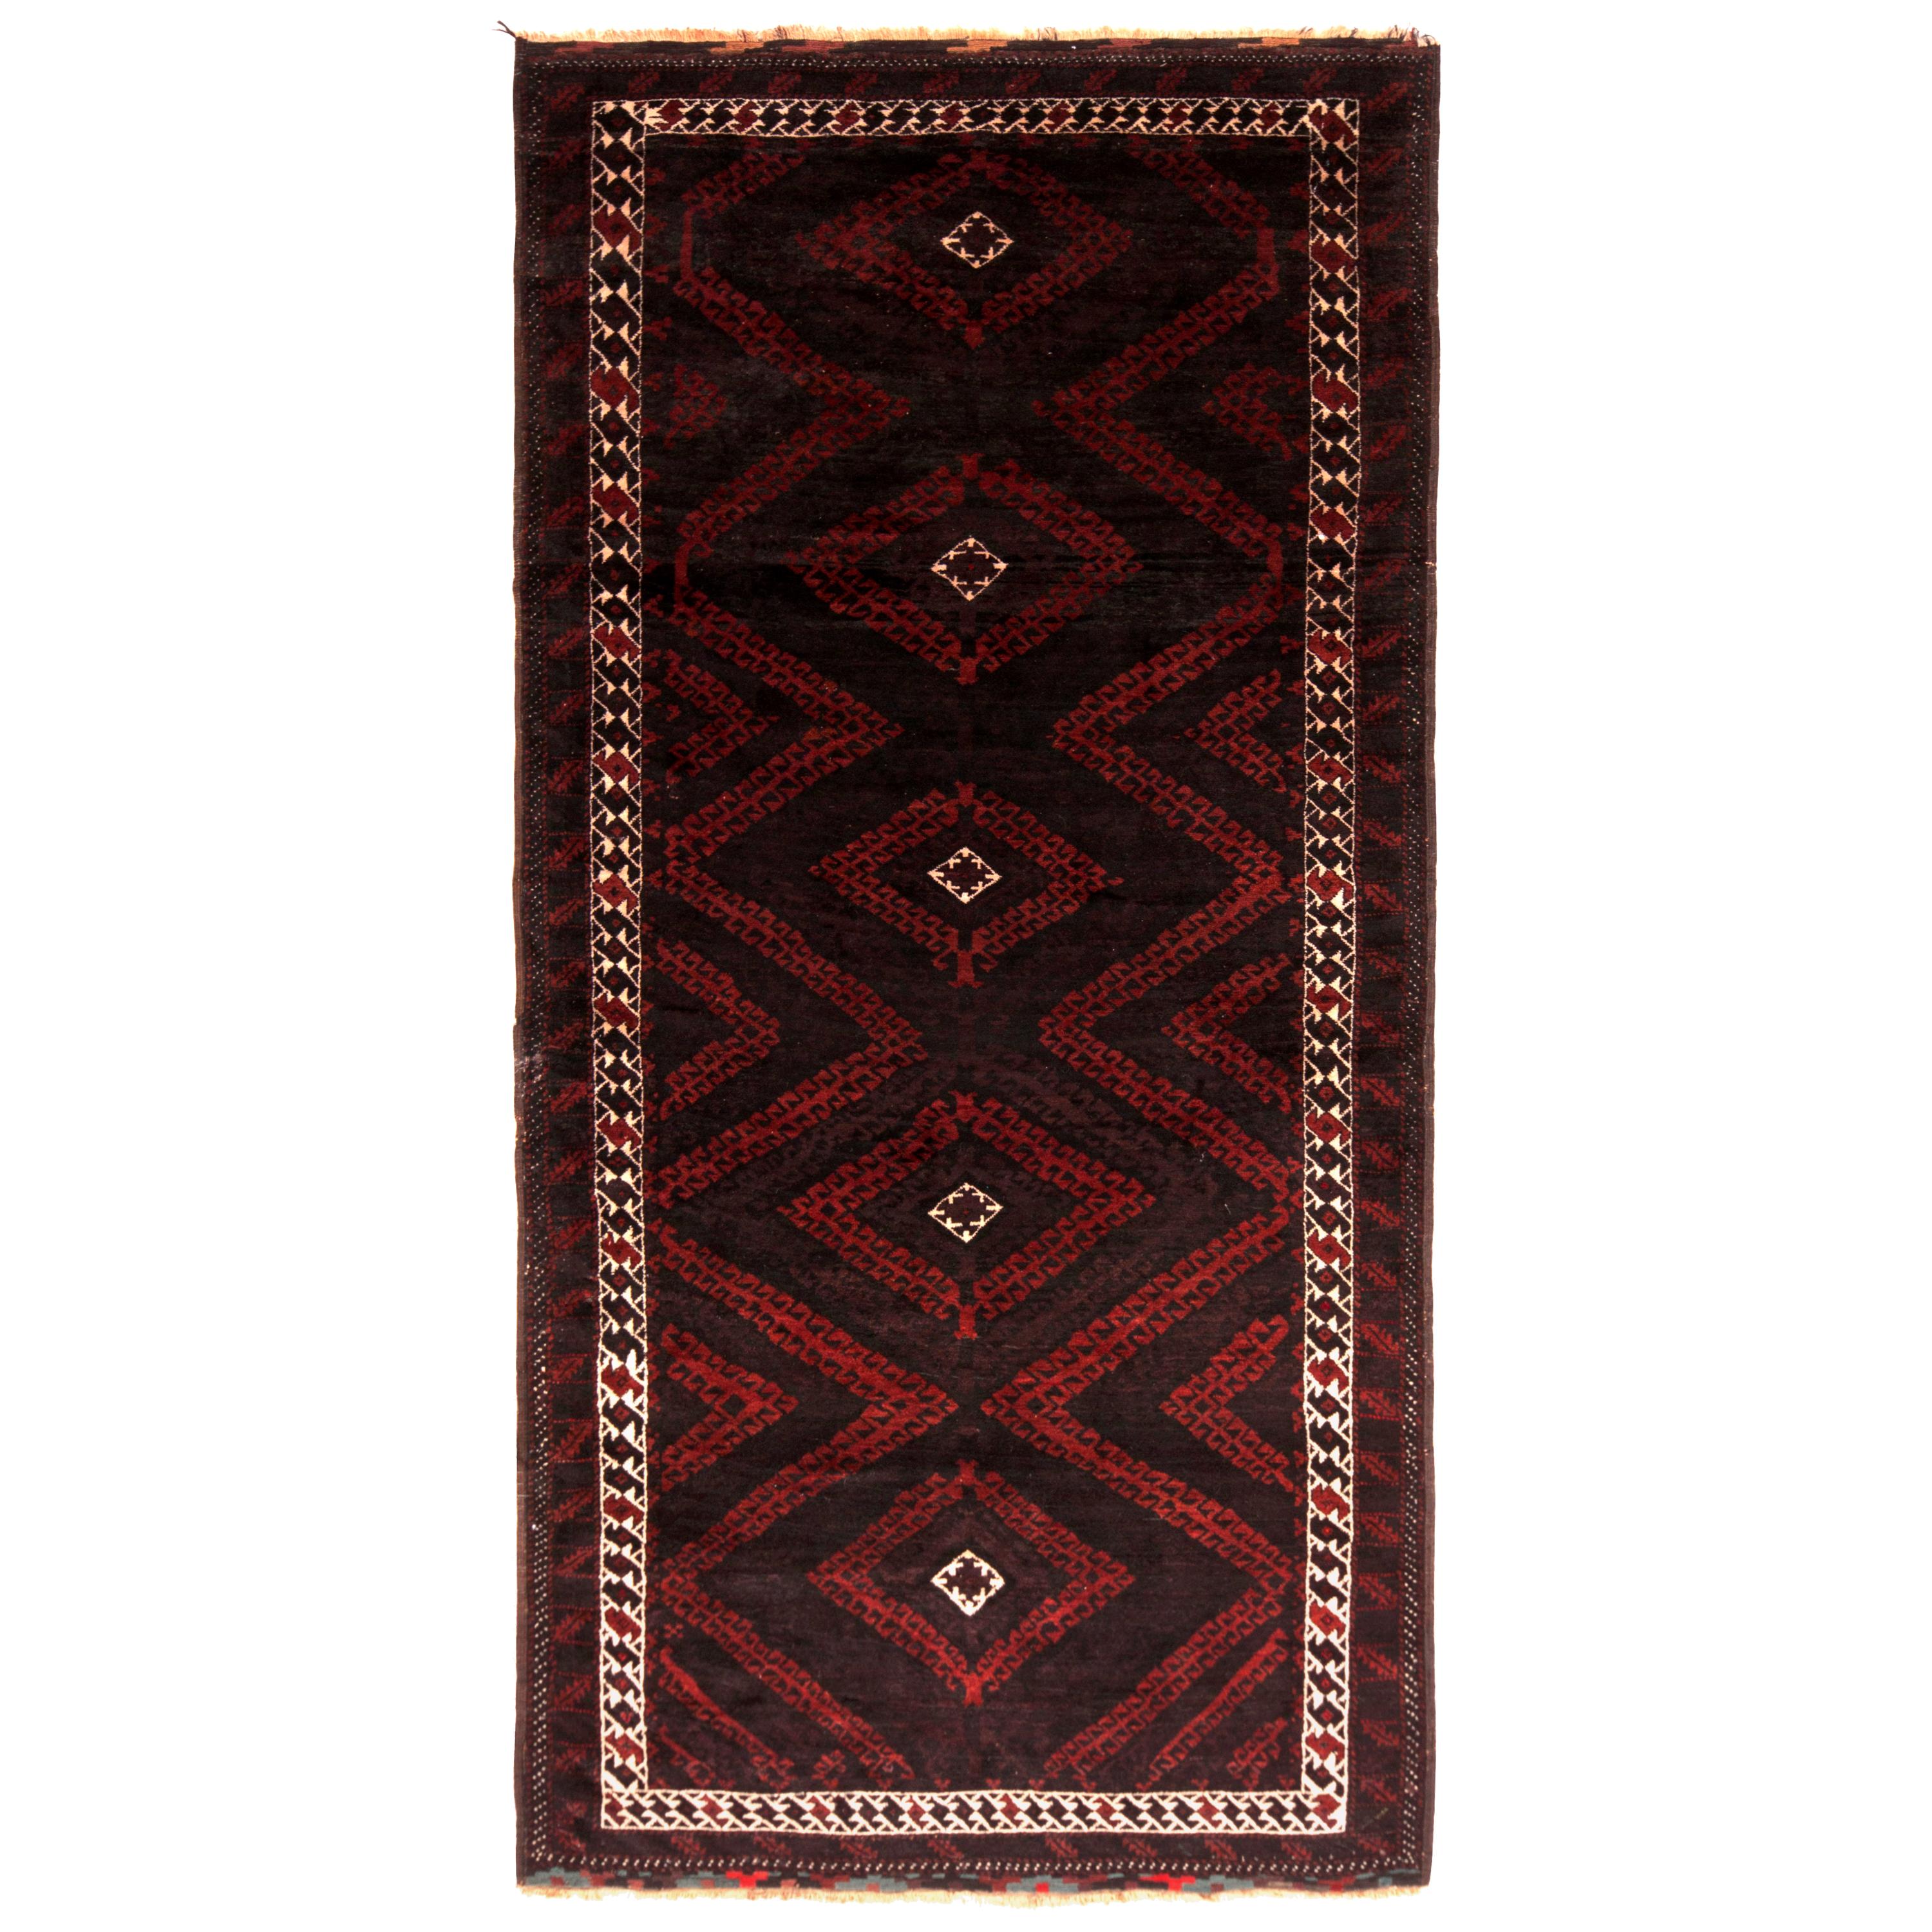 Handgeknüpfter braun-roter Vintage-Teppich mit persischem Muster von Teppich & Kelim aus der Jahrhundertmitte